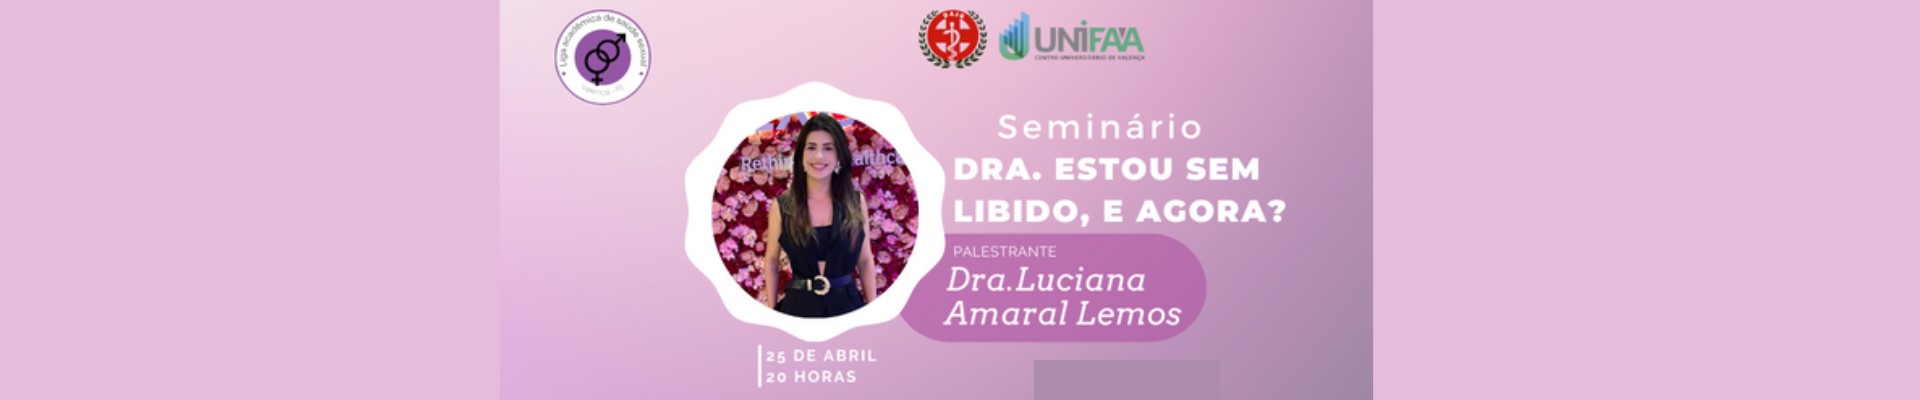 Seminário com Drª Luciana Amaral Lemos